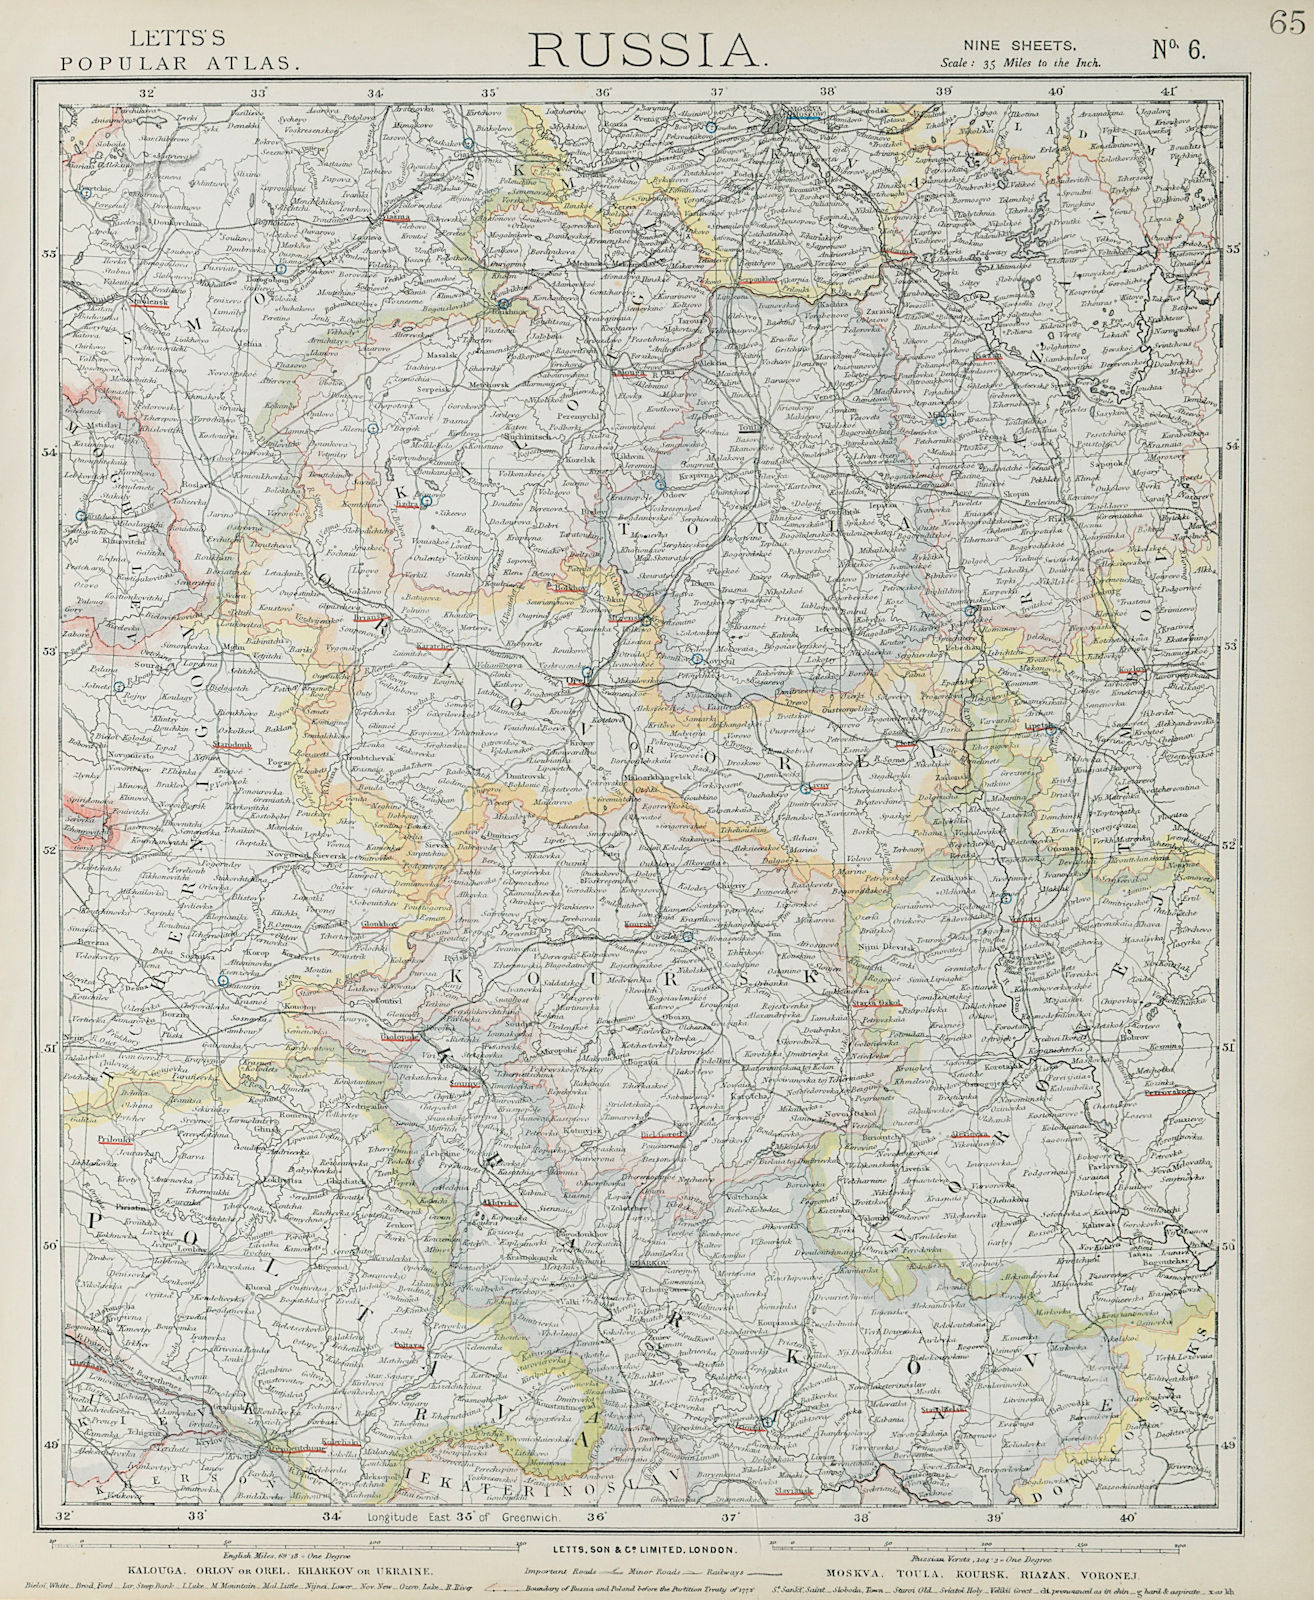 RUSSIA Kalouga Kharkov Ukraine Moscow Toula Kursk Riazan Voronej. LETTS 1884 map